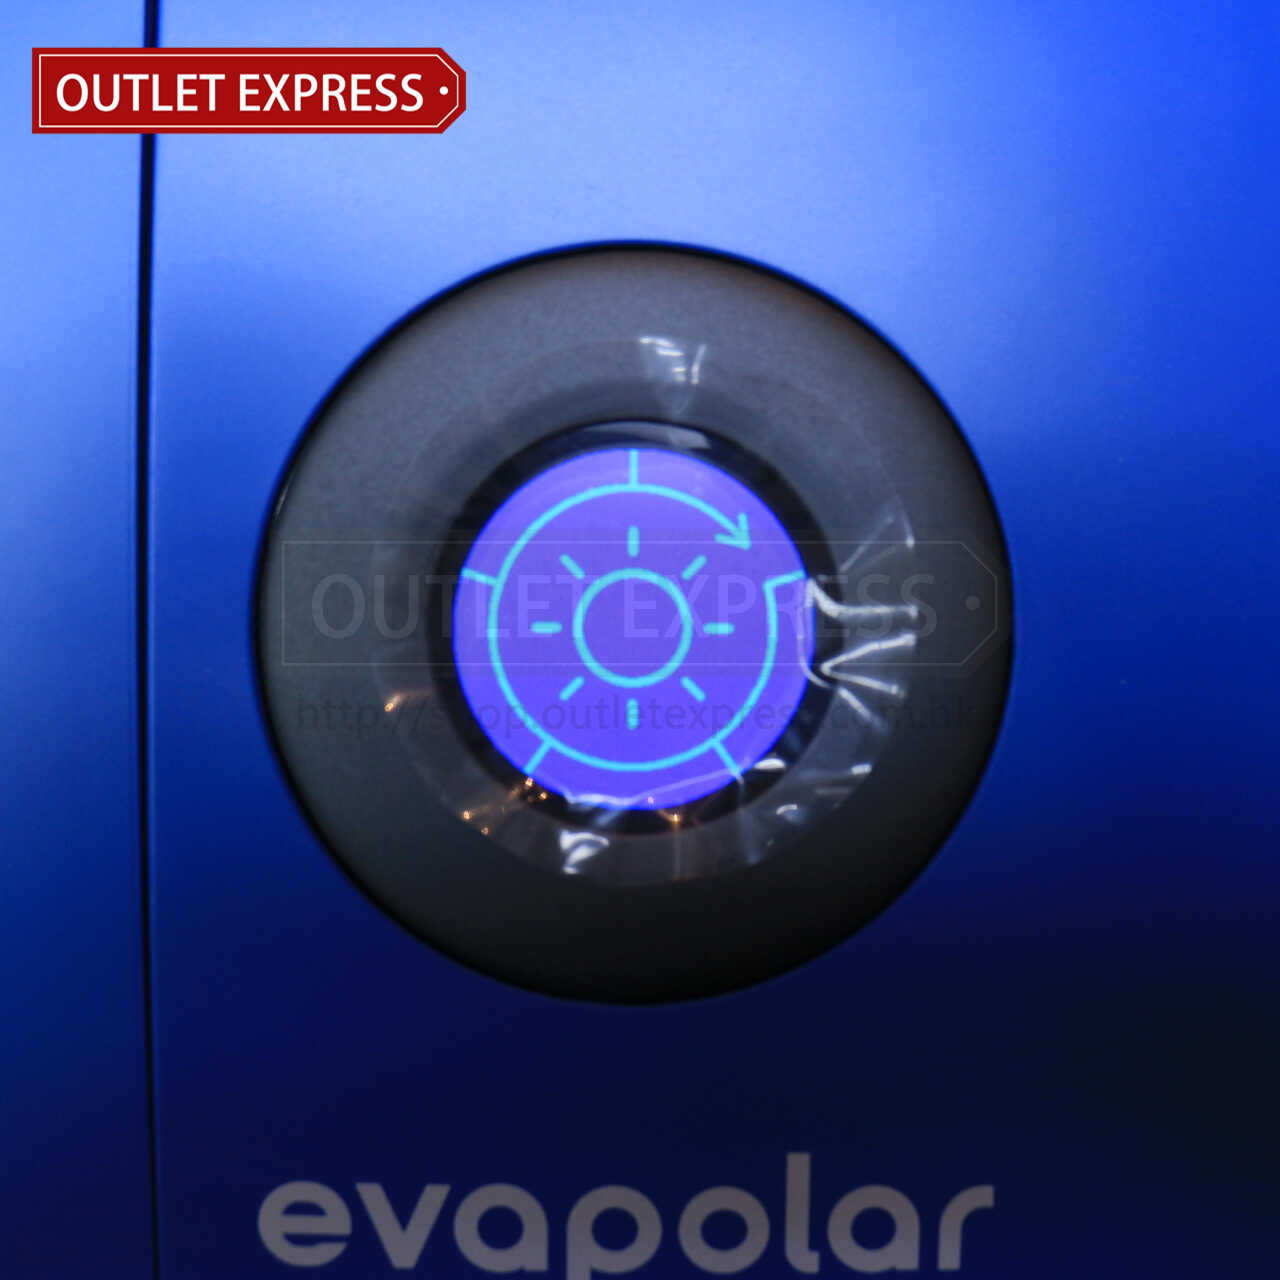 Evapolar 小型流動冷氣機功能設定- Outlet Express HK生活百貨城實拍相片